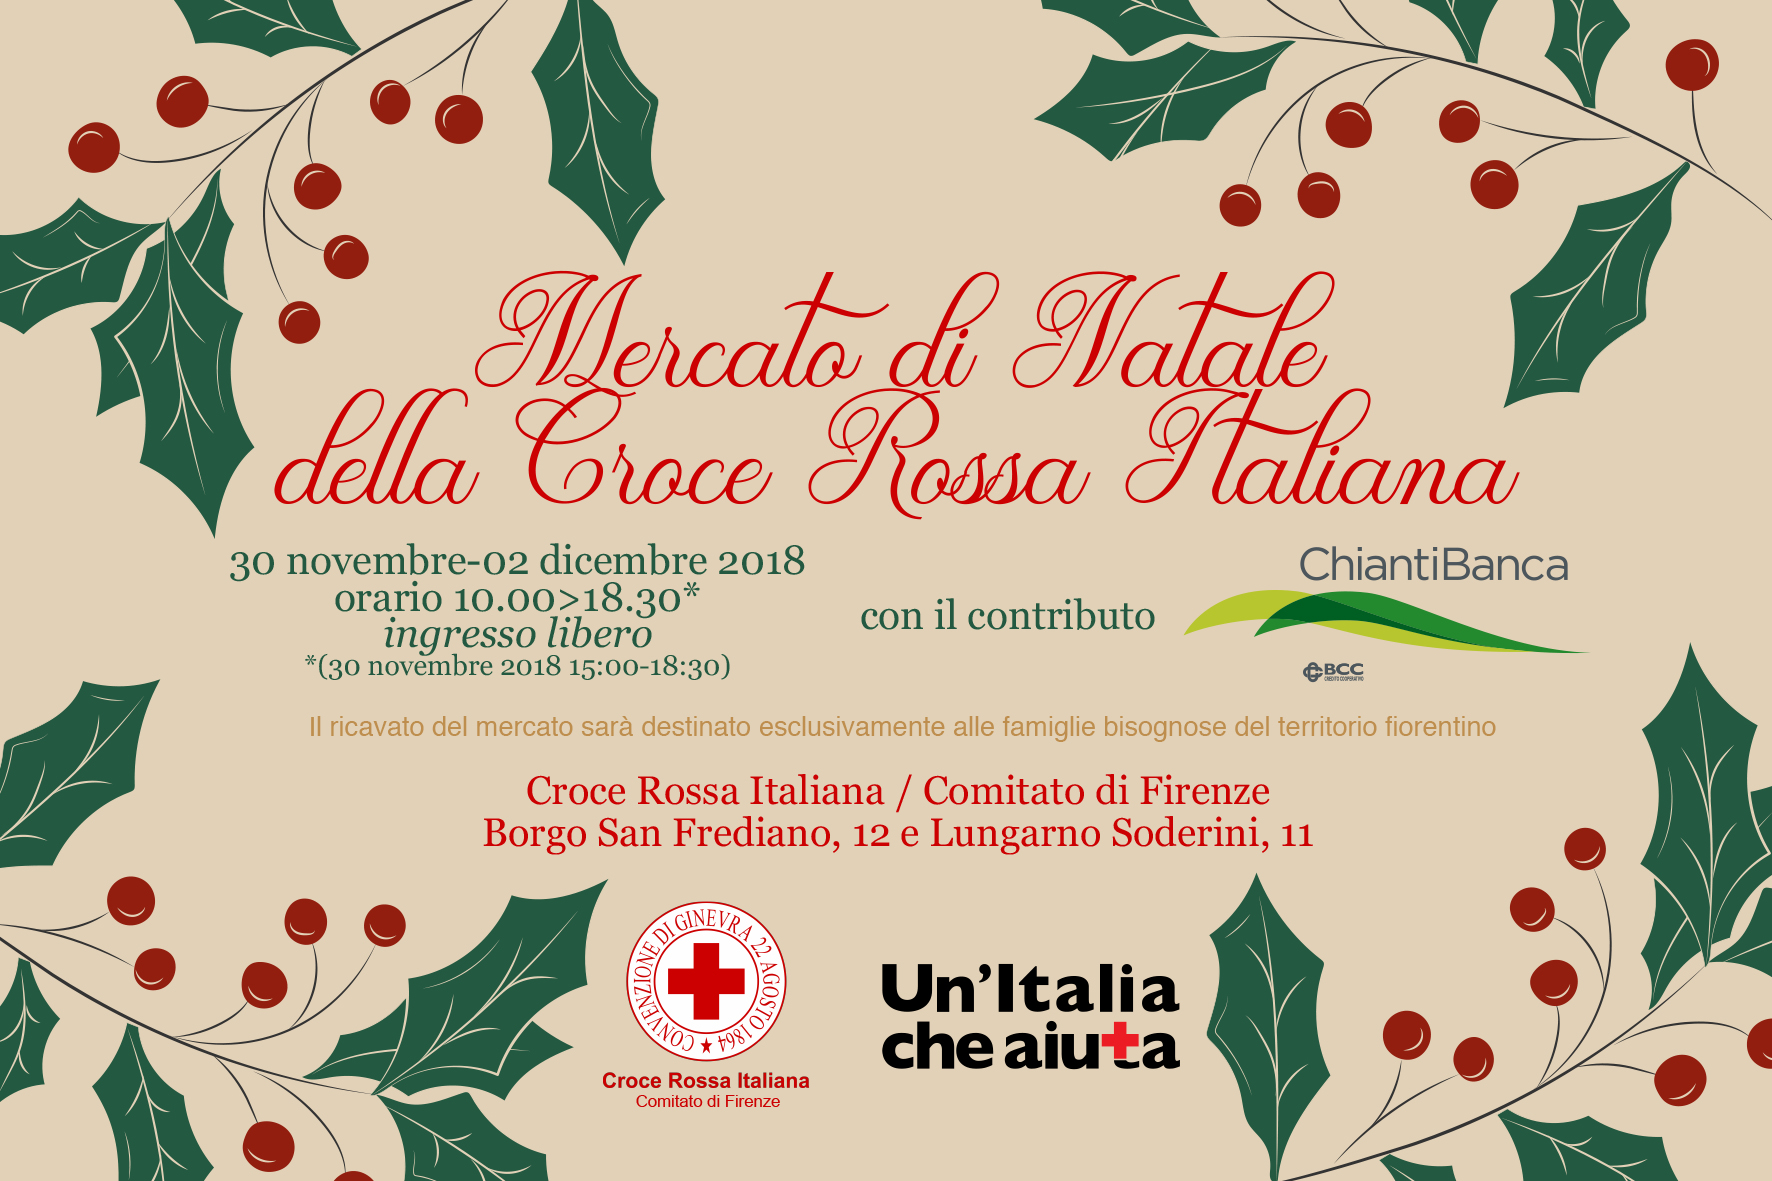 Firenze: Mercato di Natale della Croce Rossa 2018